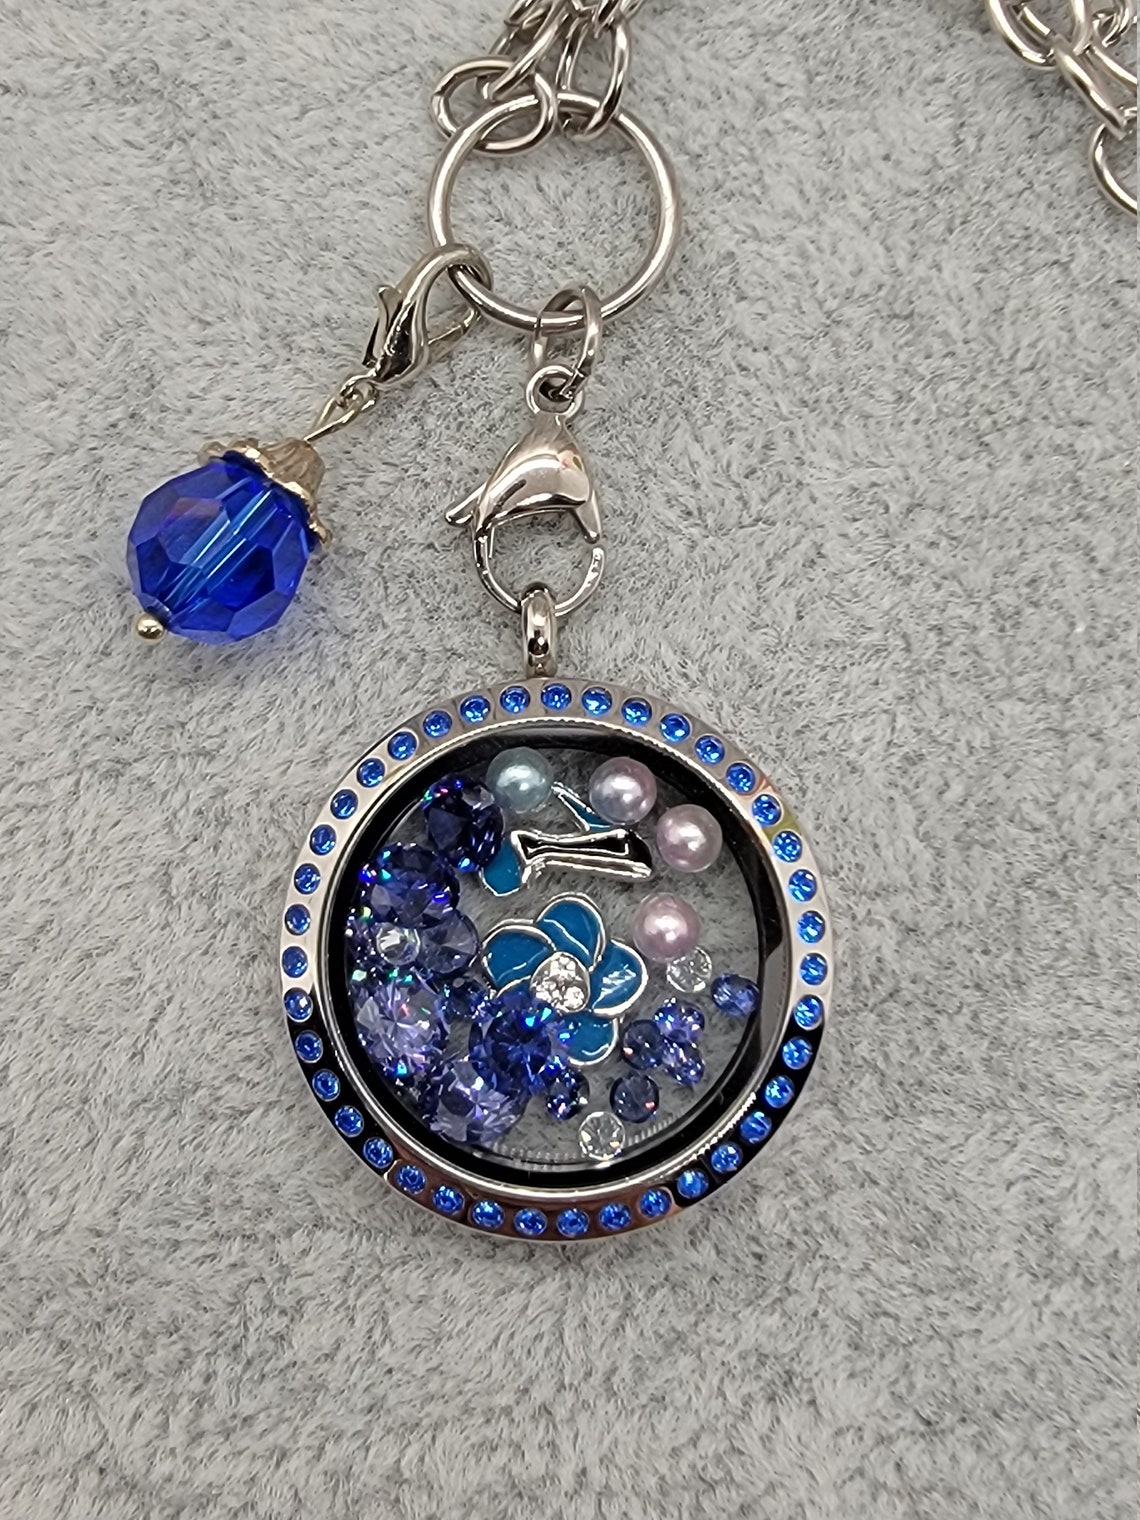 Floating Charm Locket Necklace Blue Crystal Stone Locket | Etsy